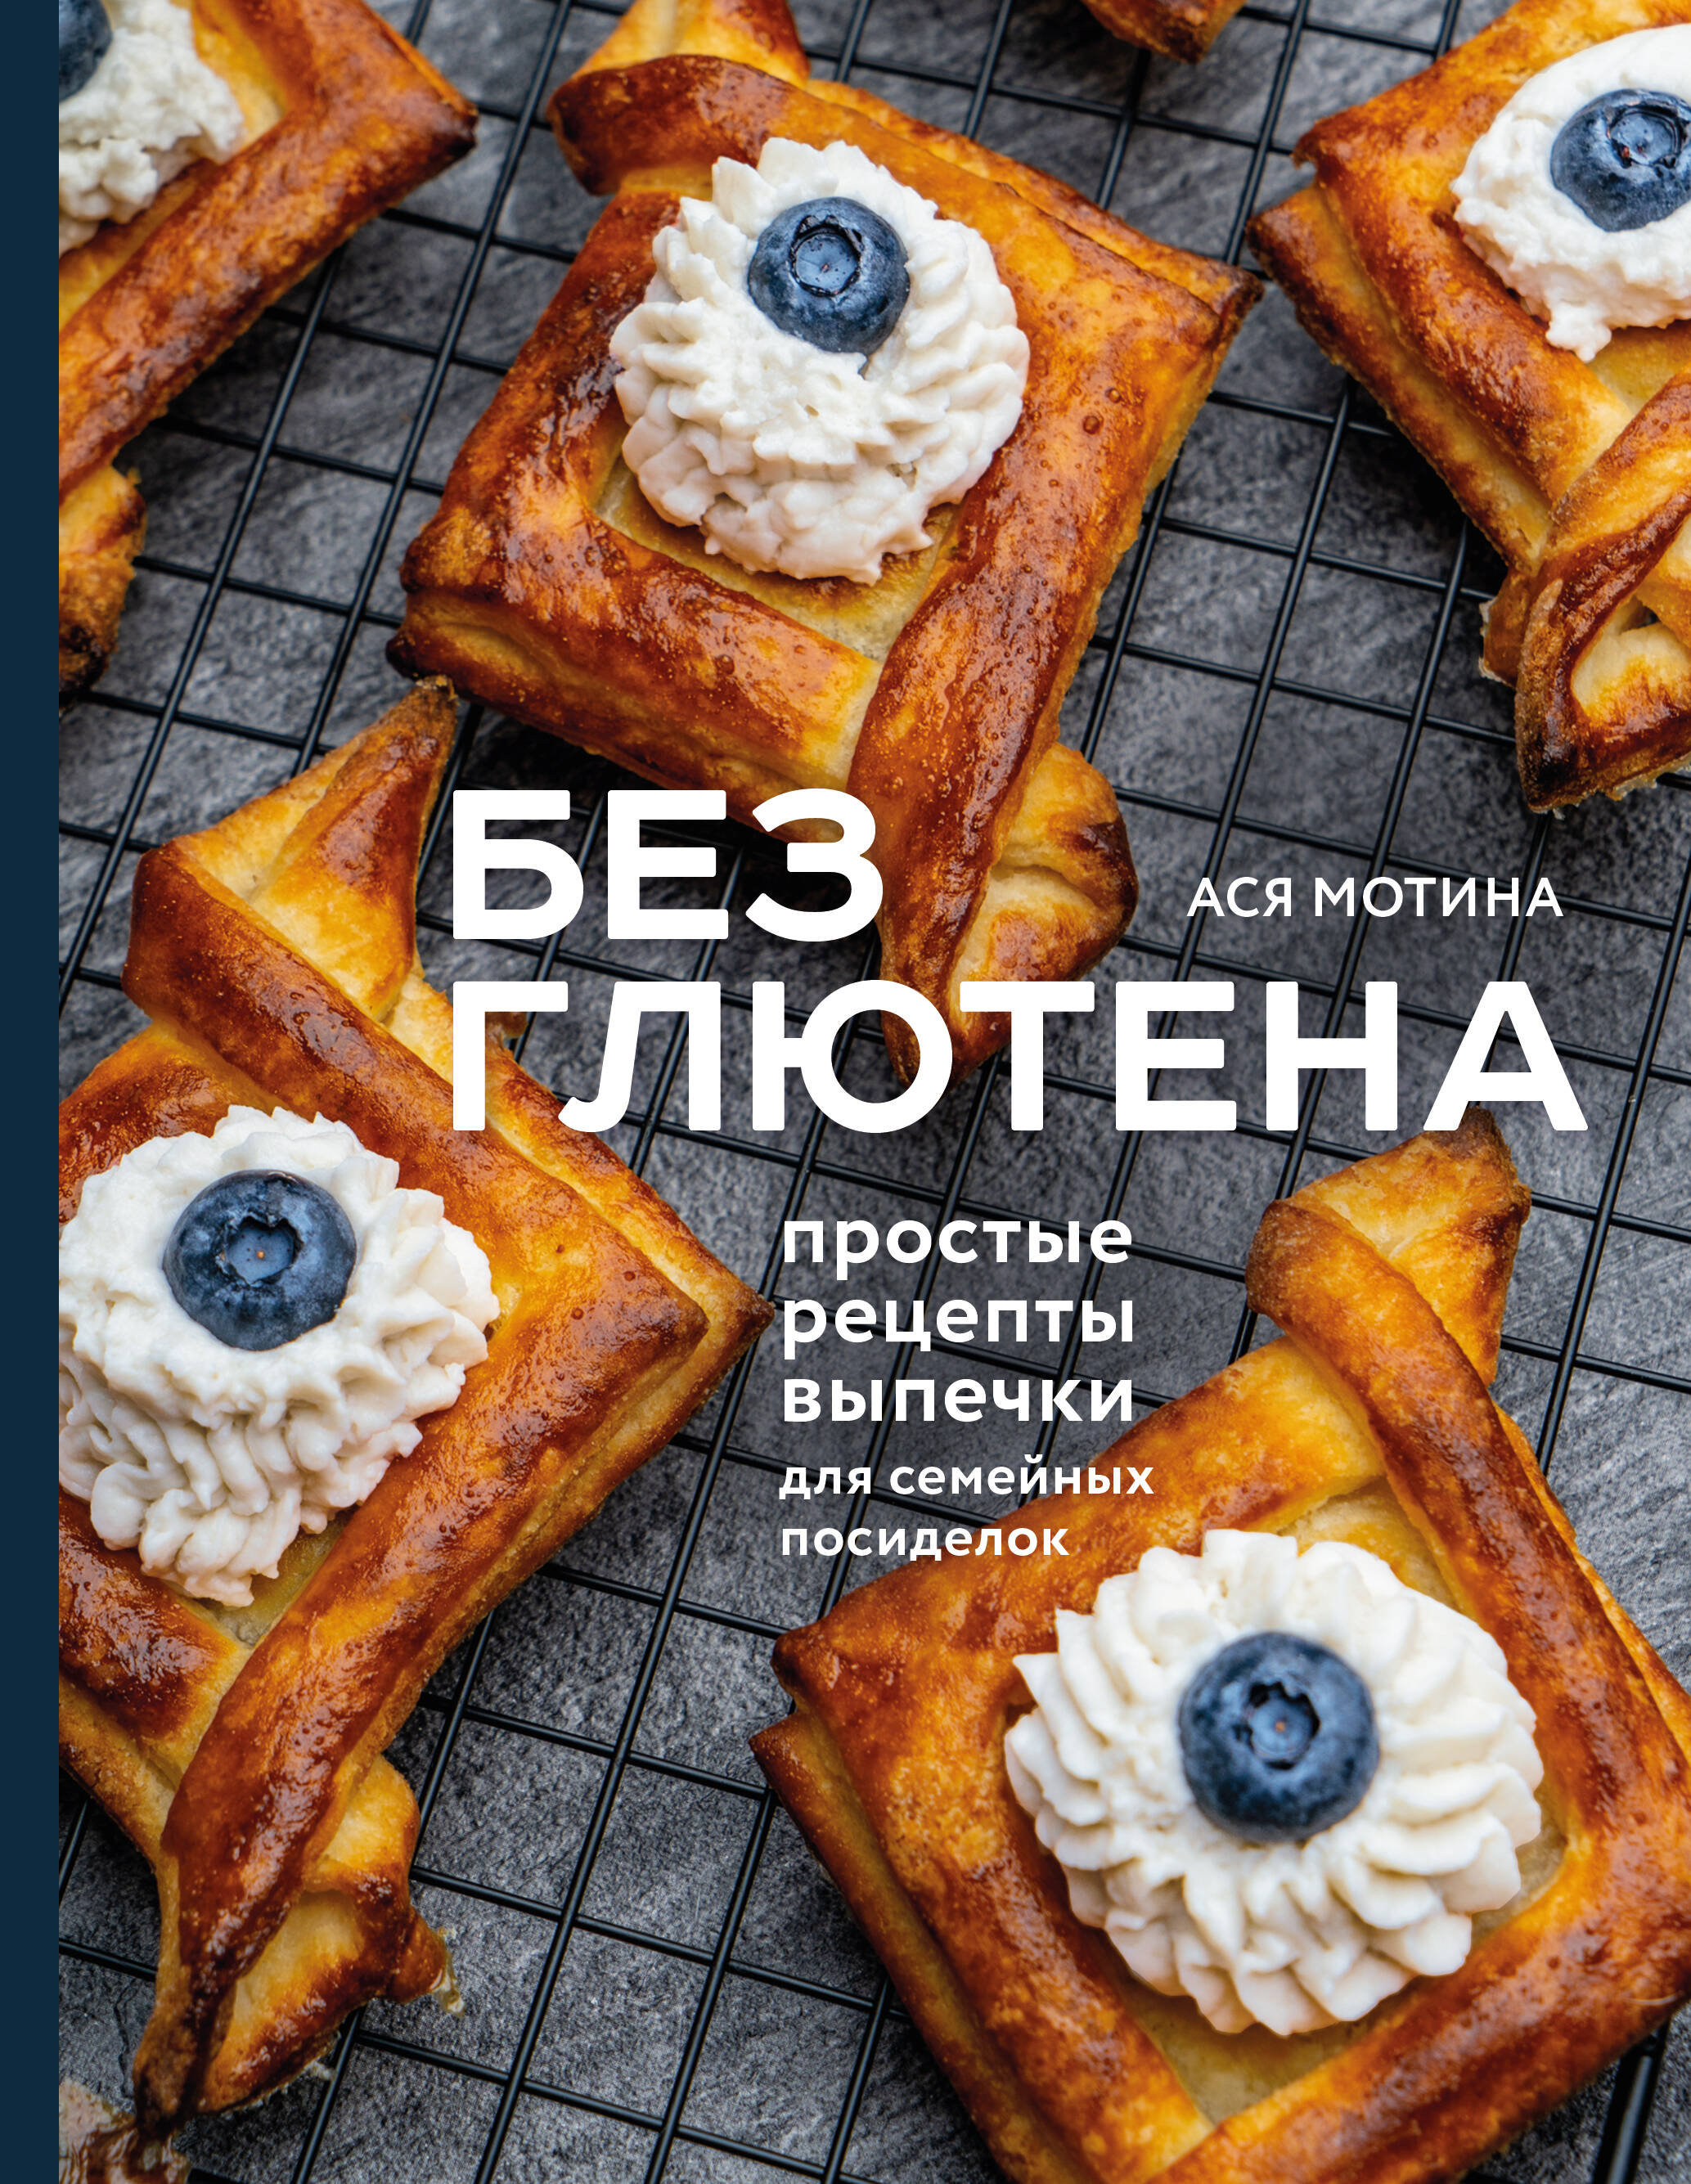 Мотина Ася Игоревна - Без глютена: простые рецепты выпечки для семейных посиделок